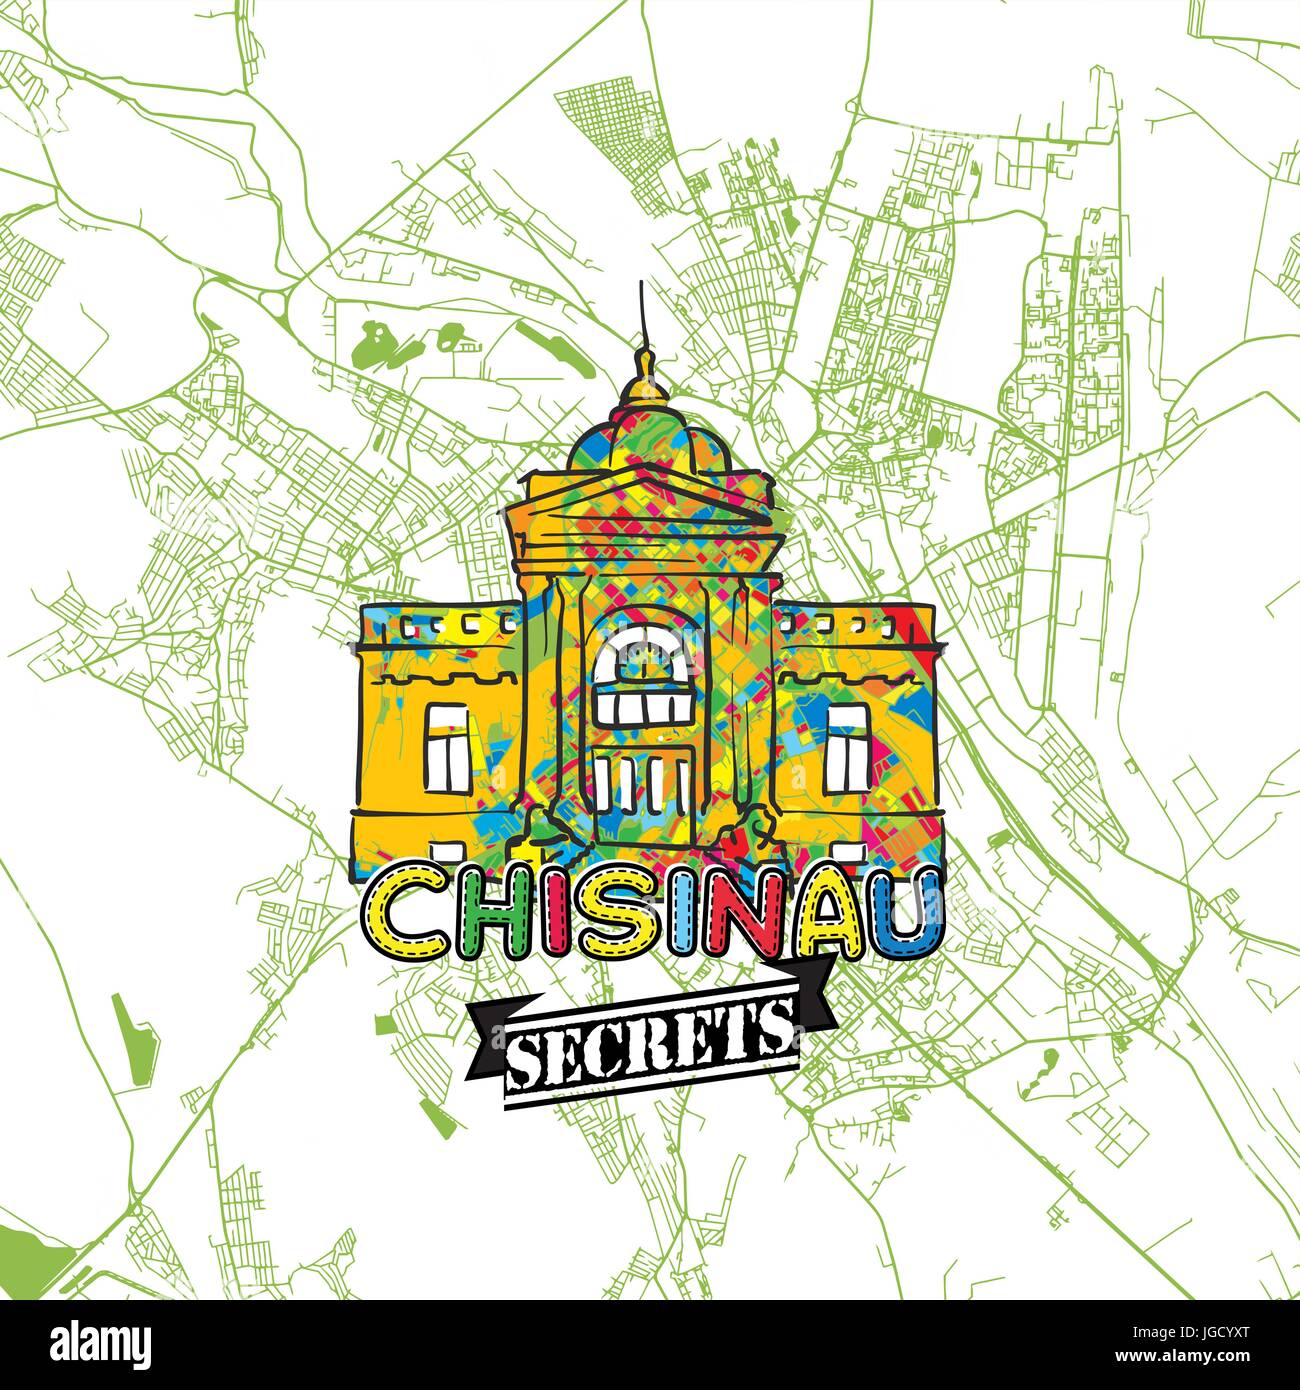 Chisinau Reisen Geheimnisse Art Map für die Zuordnung von Experten und Reiseführer. Handgemachte Stadt Logo, Typo-Abzeichen und Hand gezeichnete Vektor-Bild an der Spitze sind gruppiert eine Stock Vektor